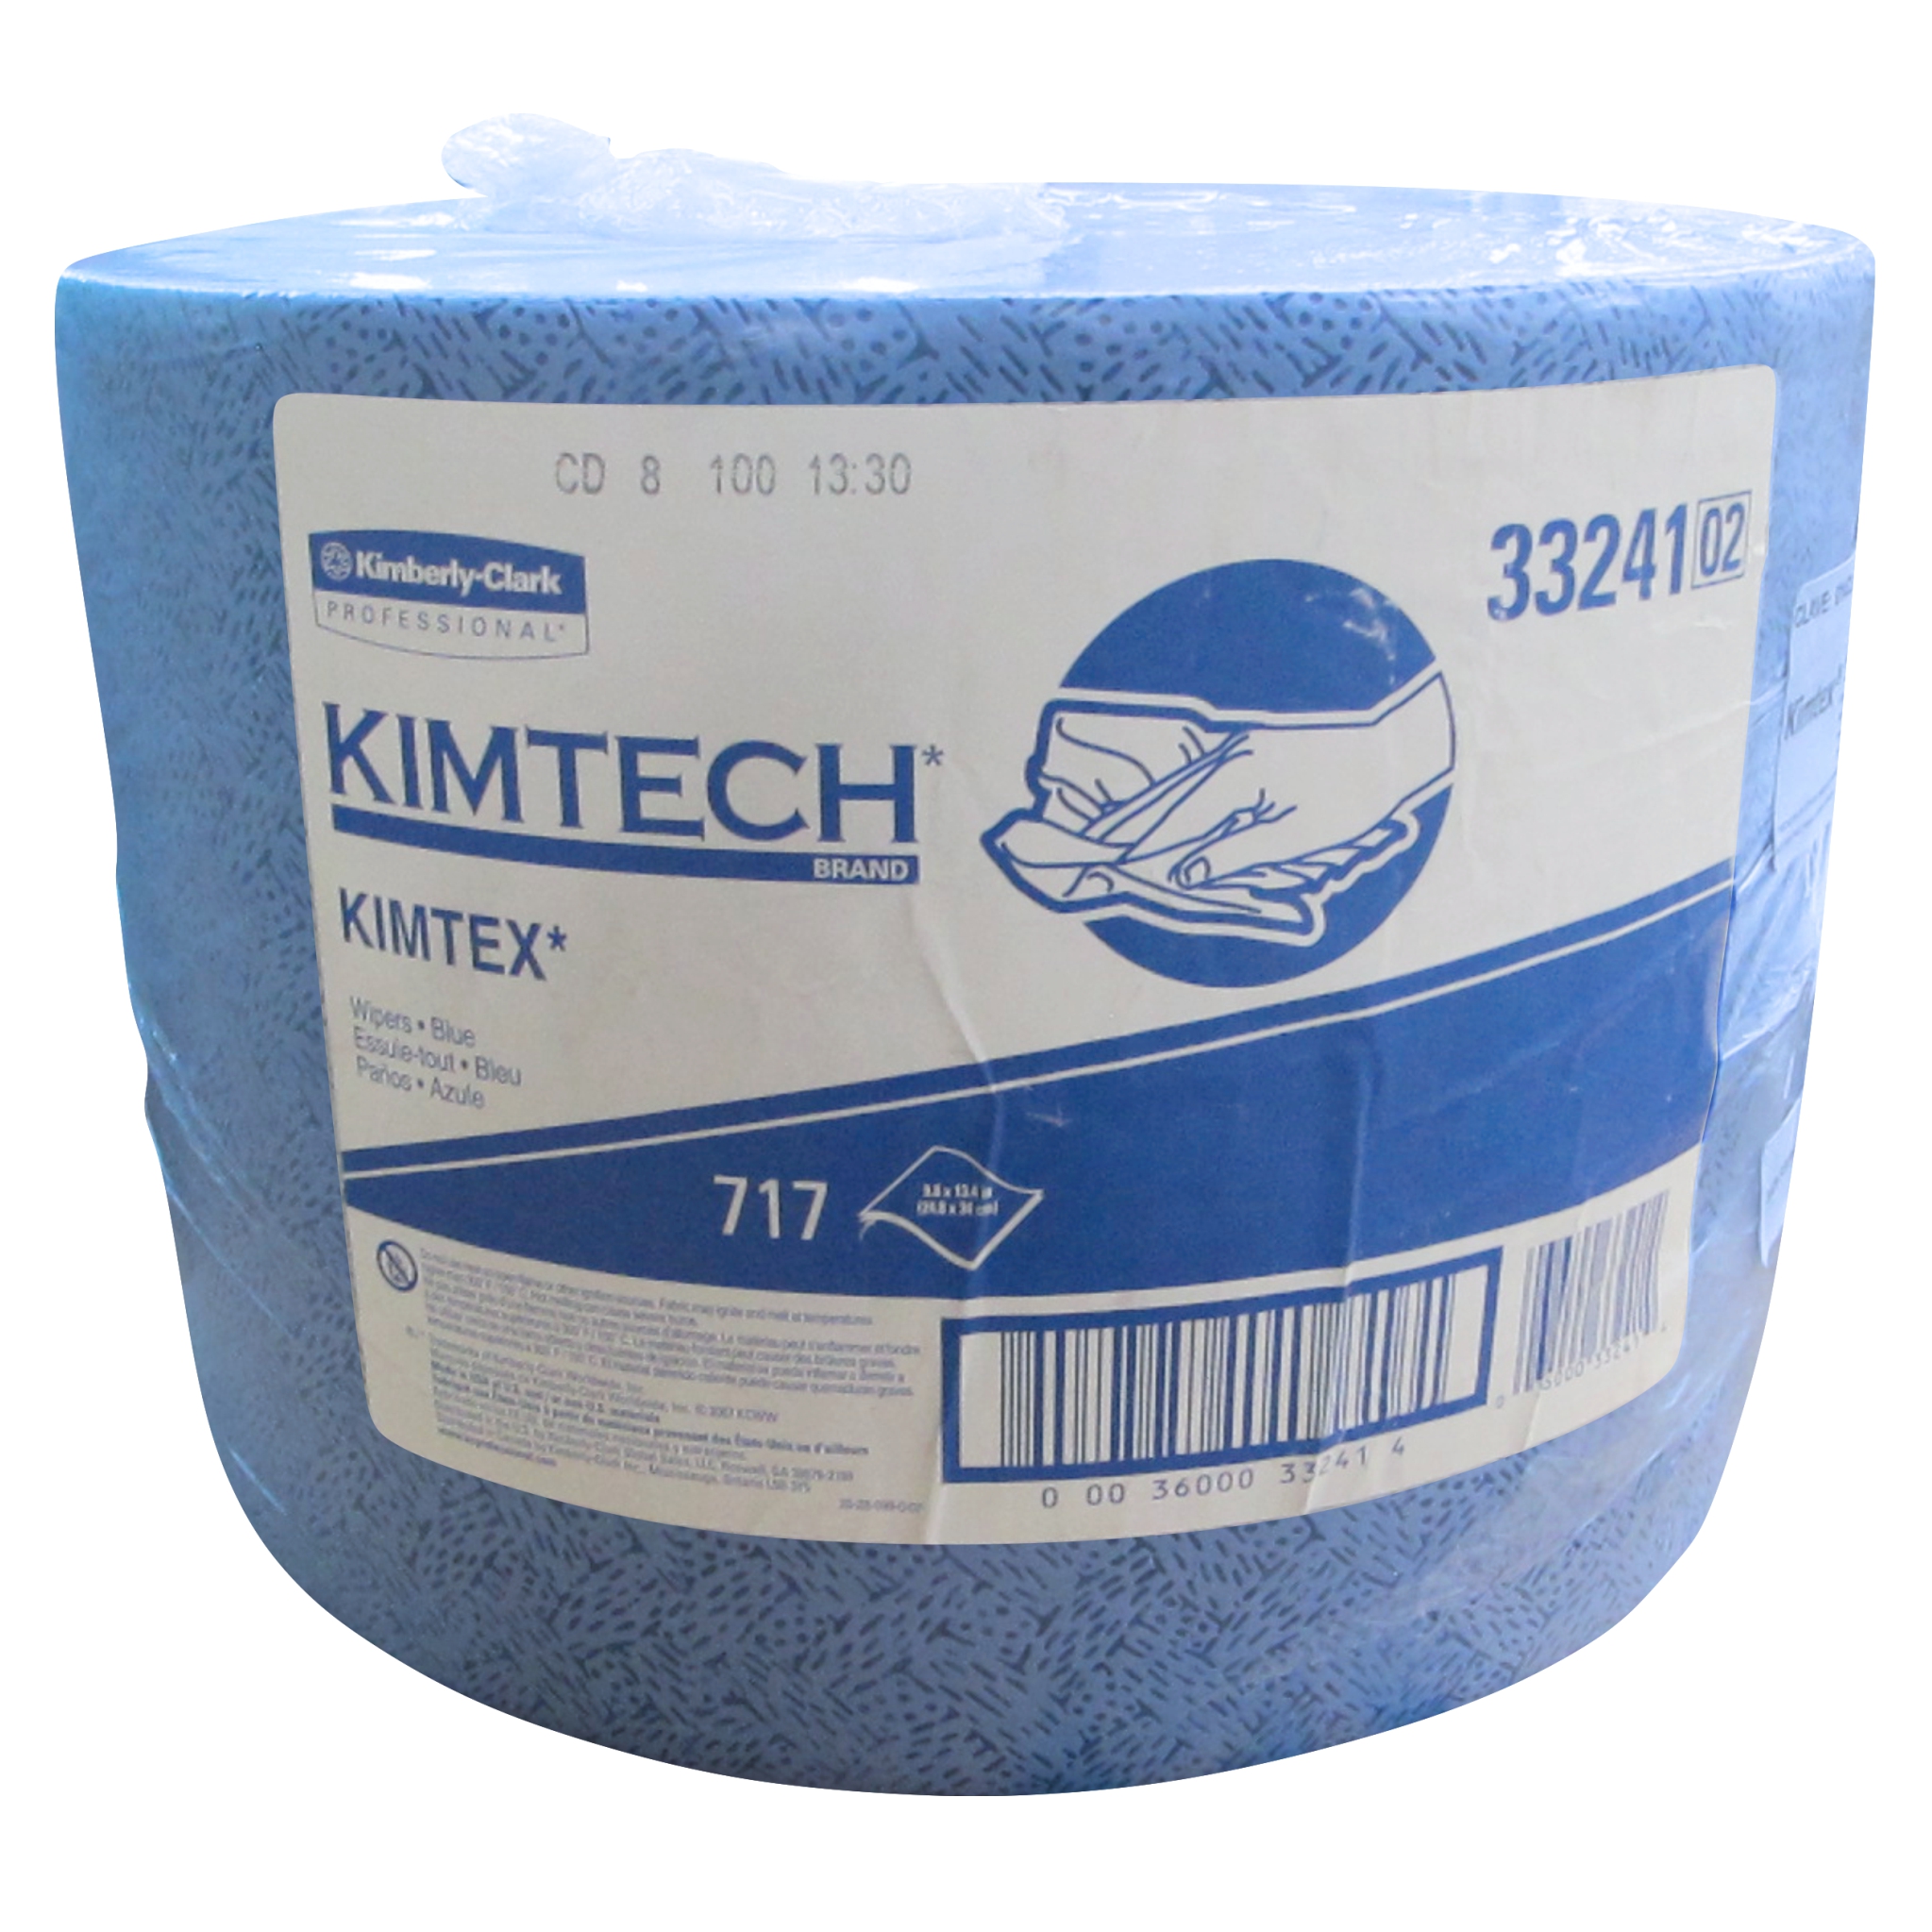 Kimberly clark 33241 Kimtech 1472 toalla wyper extra absorbente en rollo color azul gofrada, paquete con rollo unico de 717 hojas